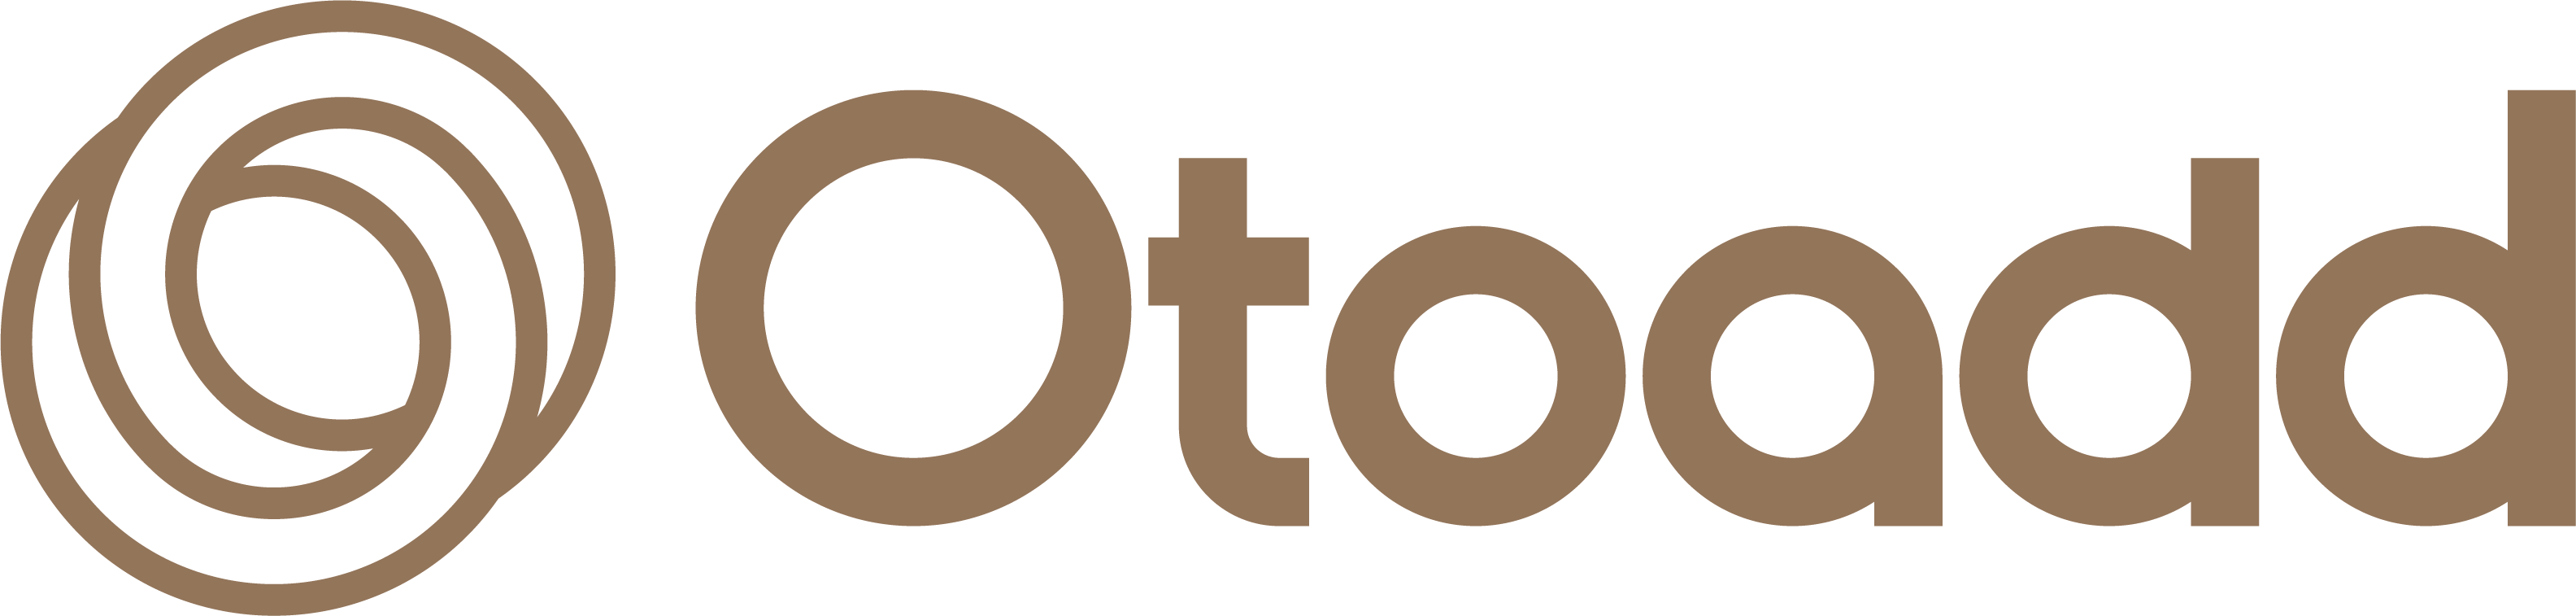 Otoadd- An earphone design by deaf. Best hearing scenario solution.

https://www.otoadd.com